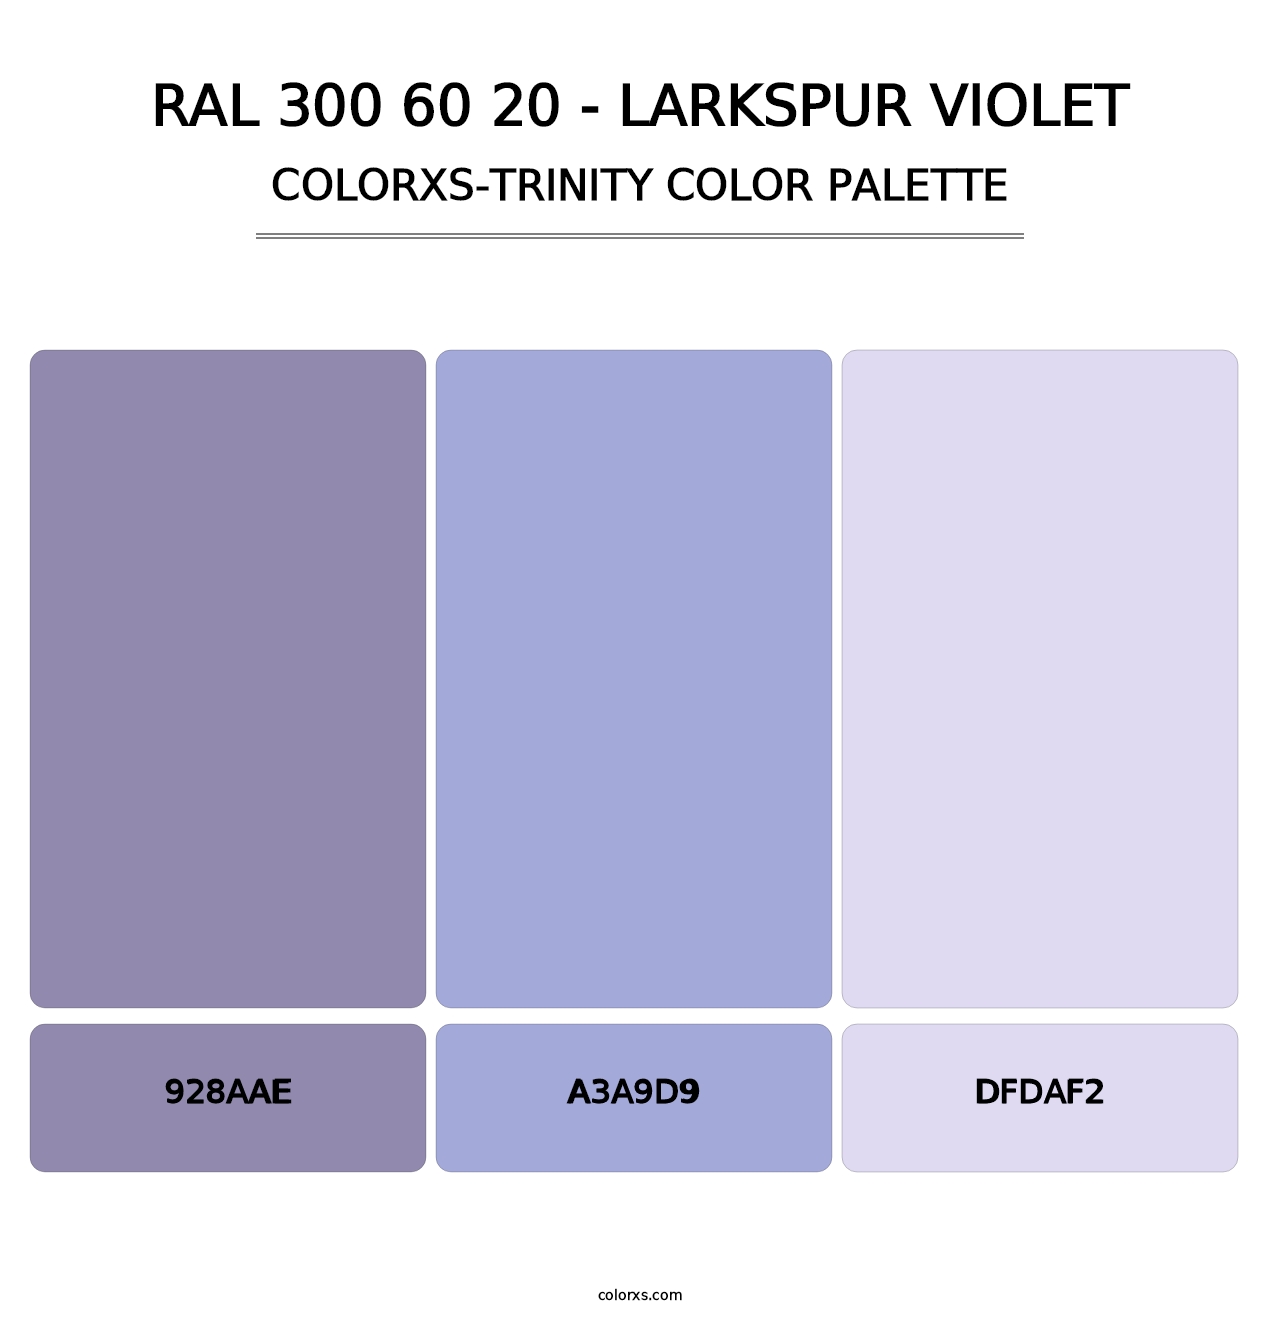 RAL 300 60 20 - Larkspur Violet - Colorxs Trinity Palette